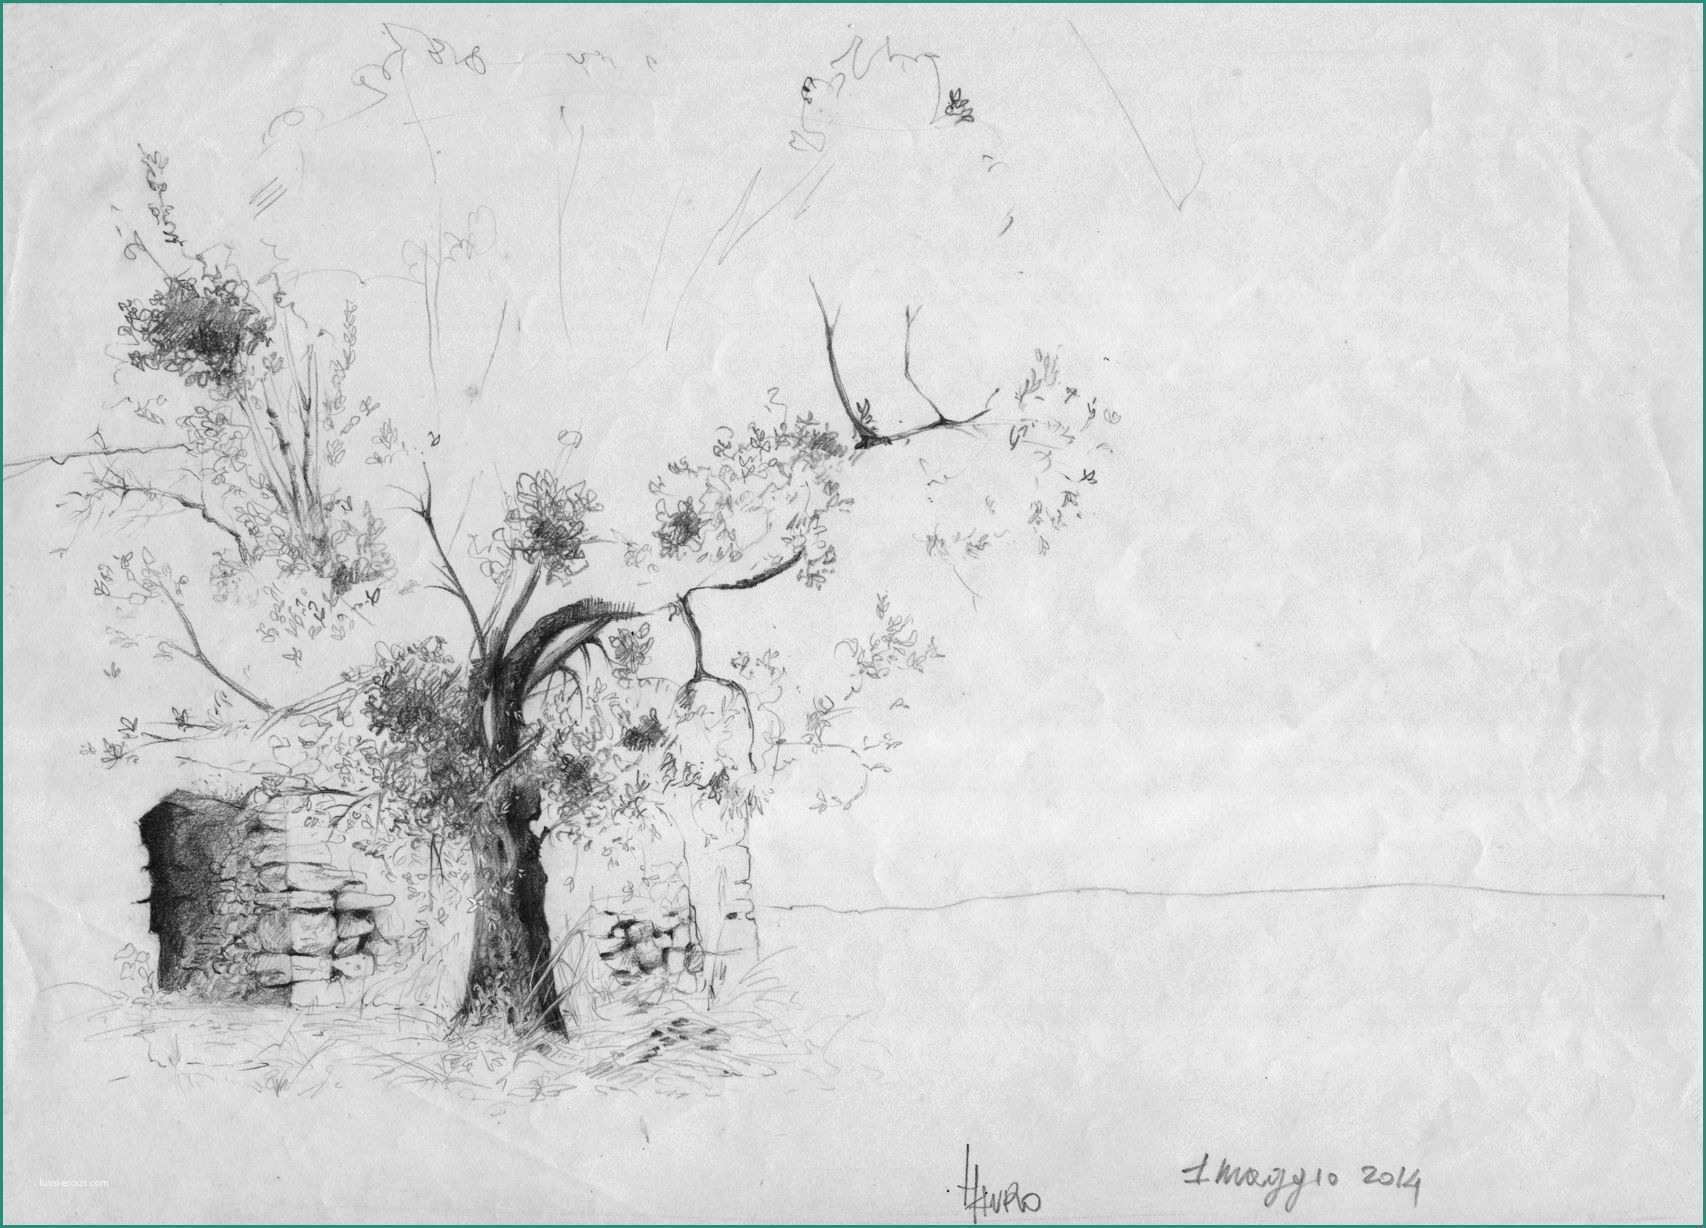 Immagini Di Farfalle Da Disegnare E Drawing Of A Olive Tree Studio Di Un Olivo Matita Su Carta by